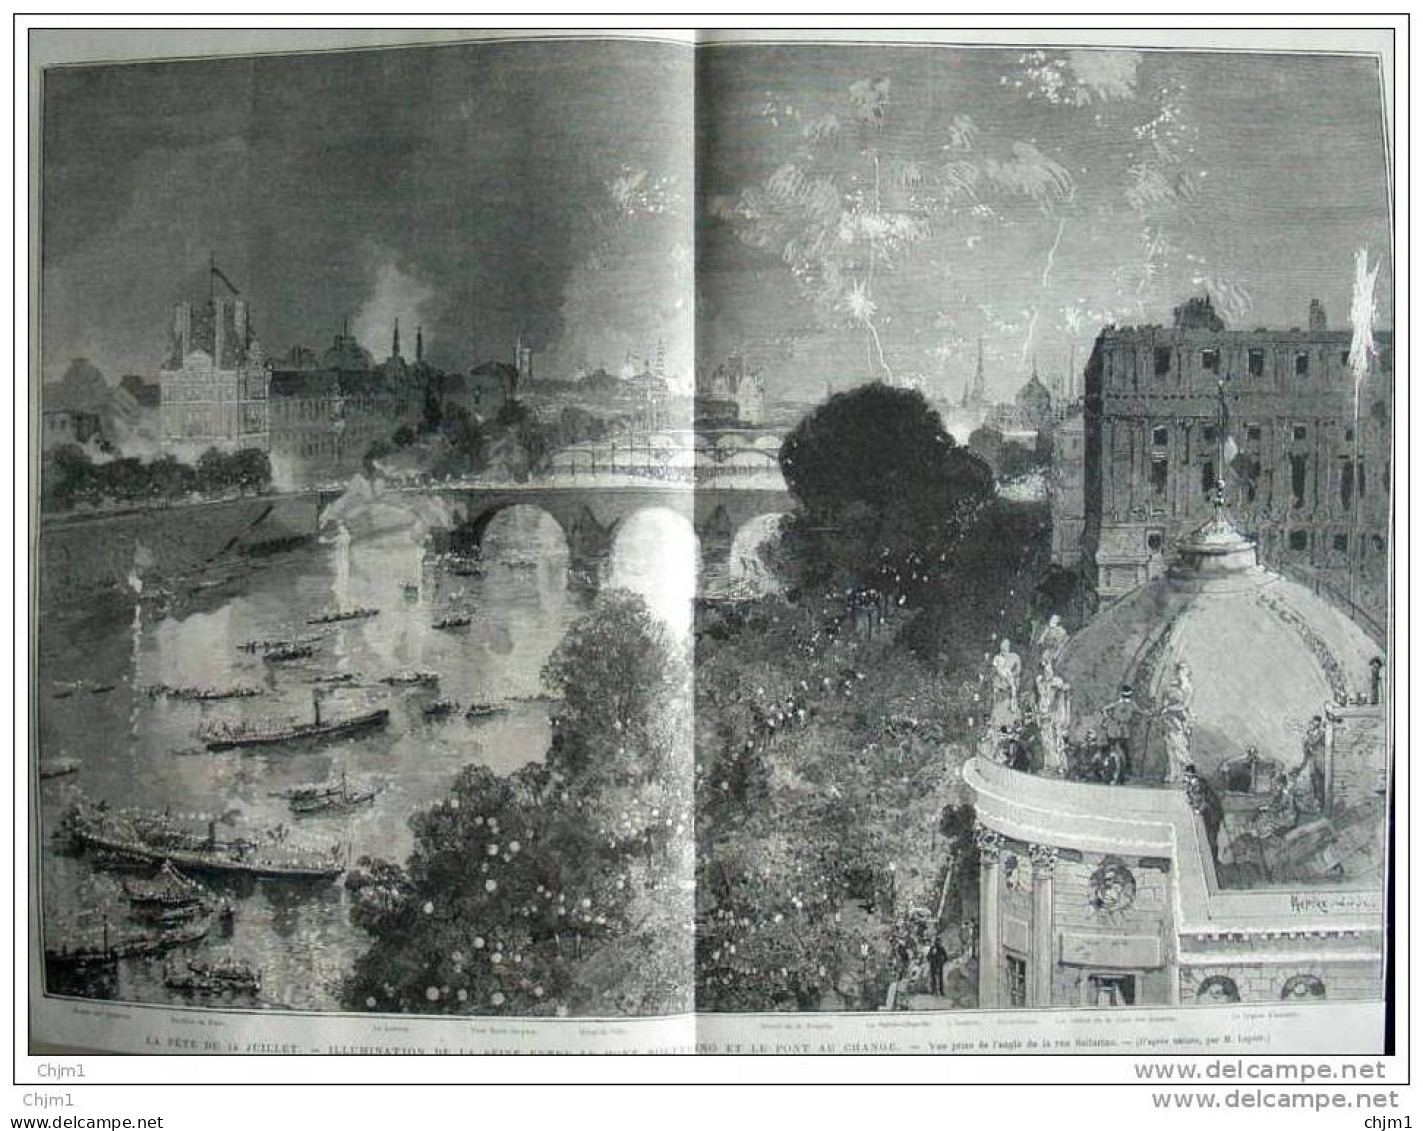 La Fête Du 14 Juillet - Illumination De La Seine Entre Le Pont Solferino Et Le Pont De Change - Page Original 1882 - Historical Documents